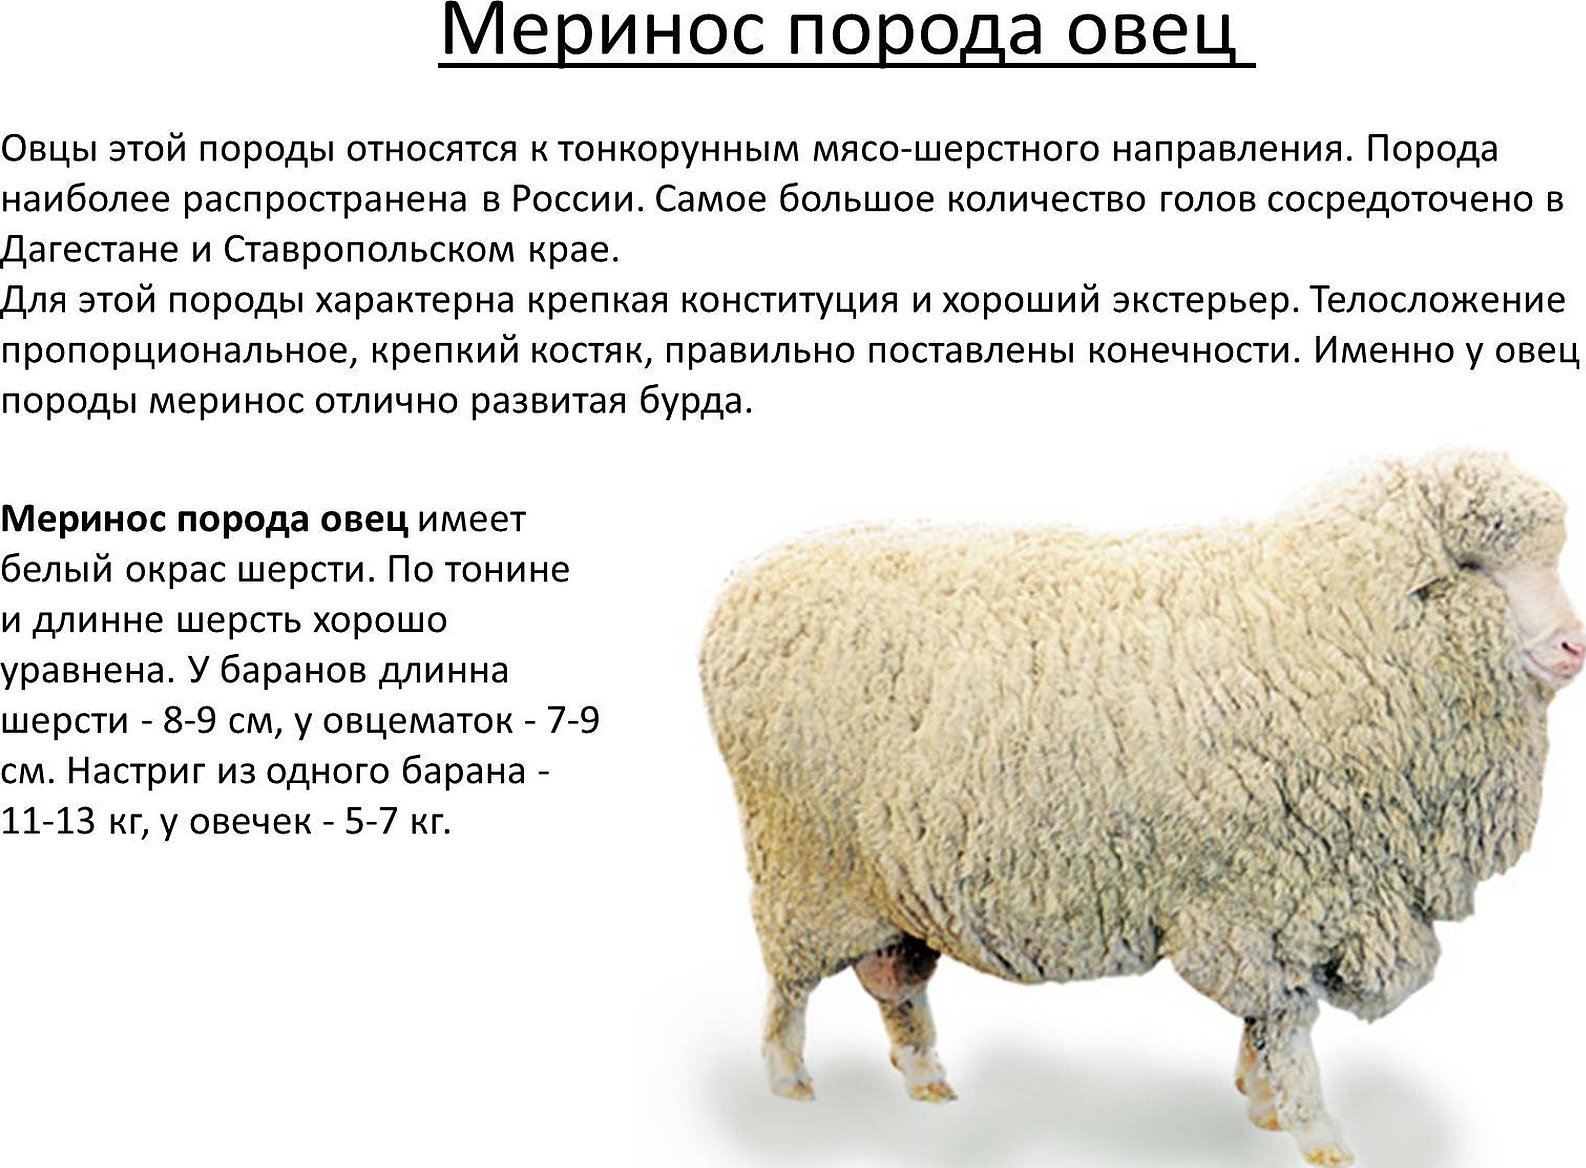 Киргизская тонкорунная порода овец